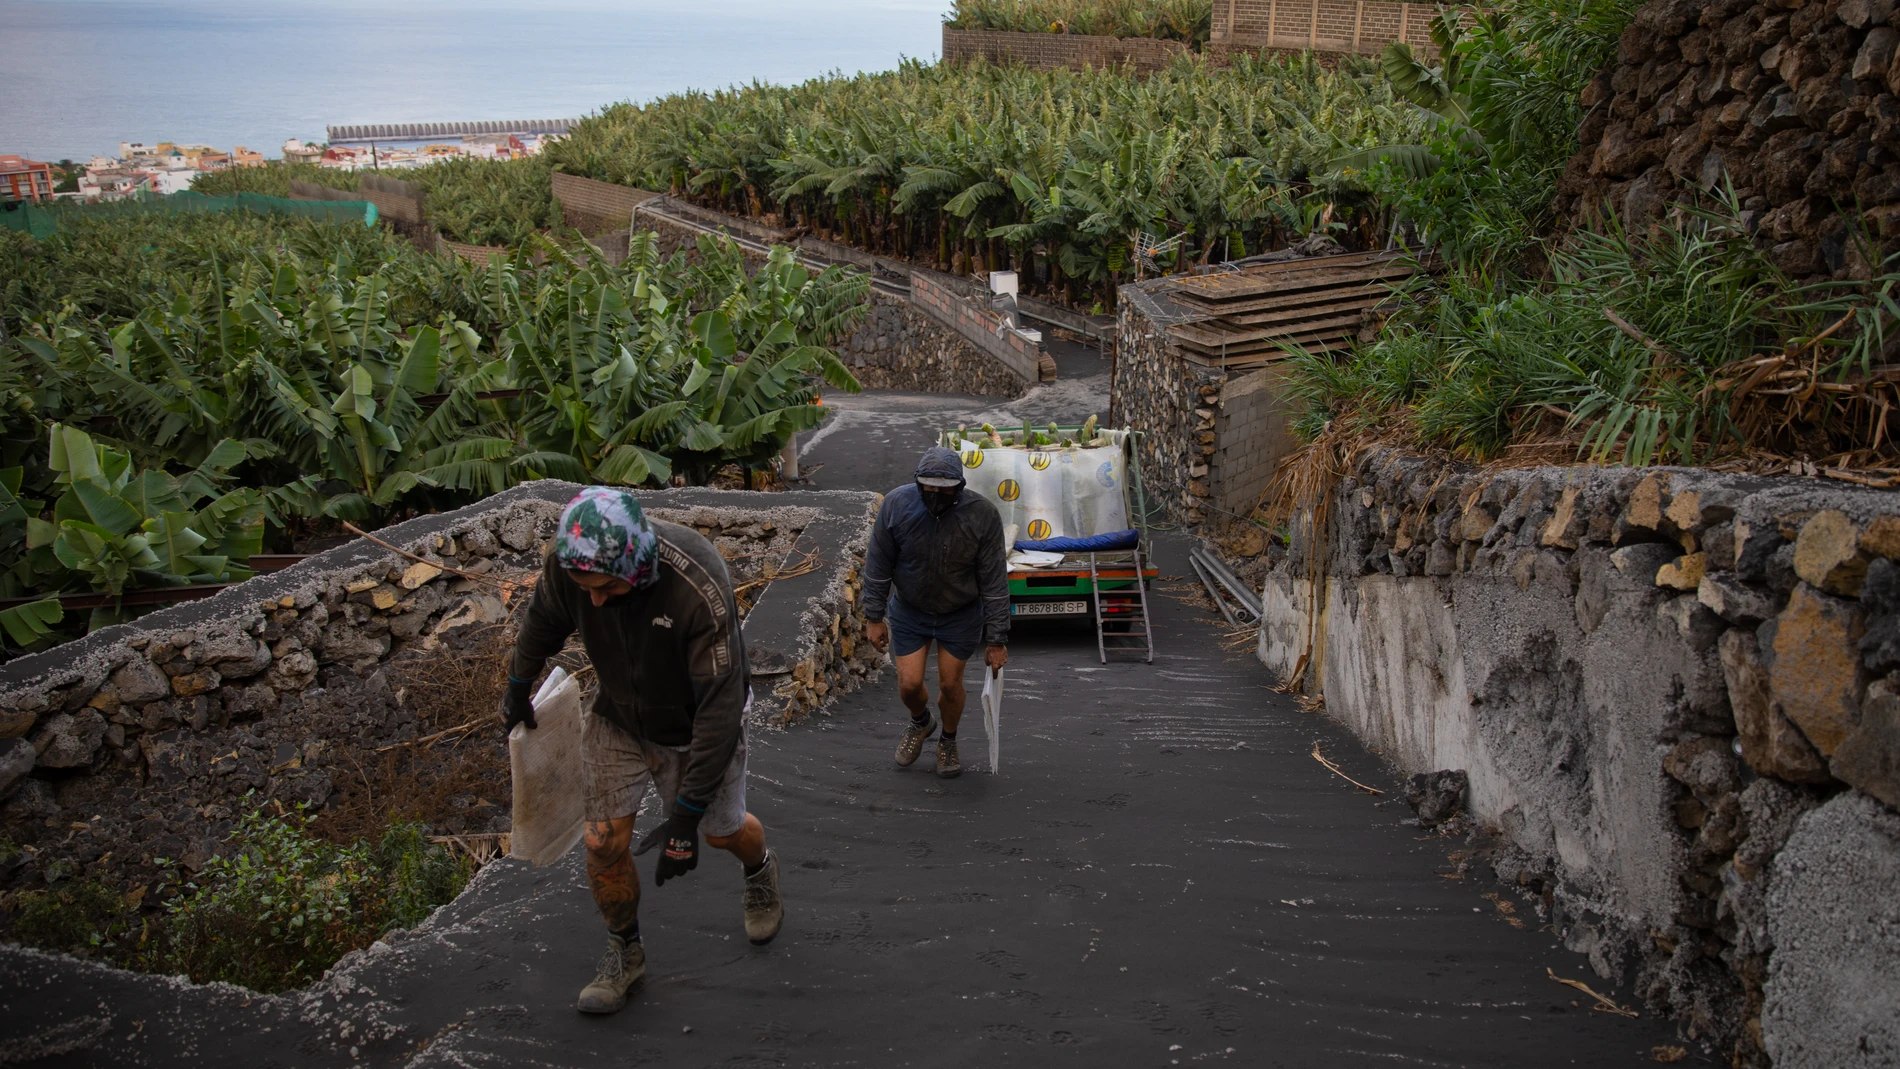 Reportaje a Jorge y Tobias, recolectores de platanos de La Palma que han visto muy afectado su trabajo debido a la cenizas del volcan de Cumbre Vieja